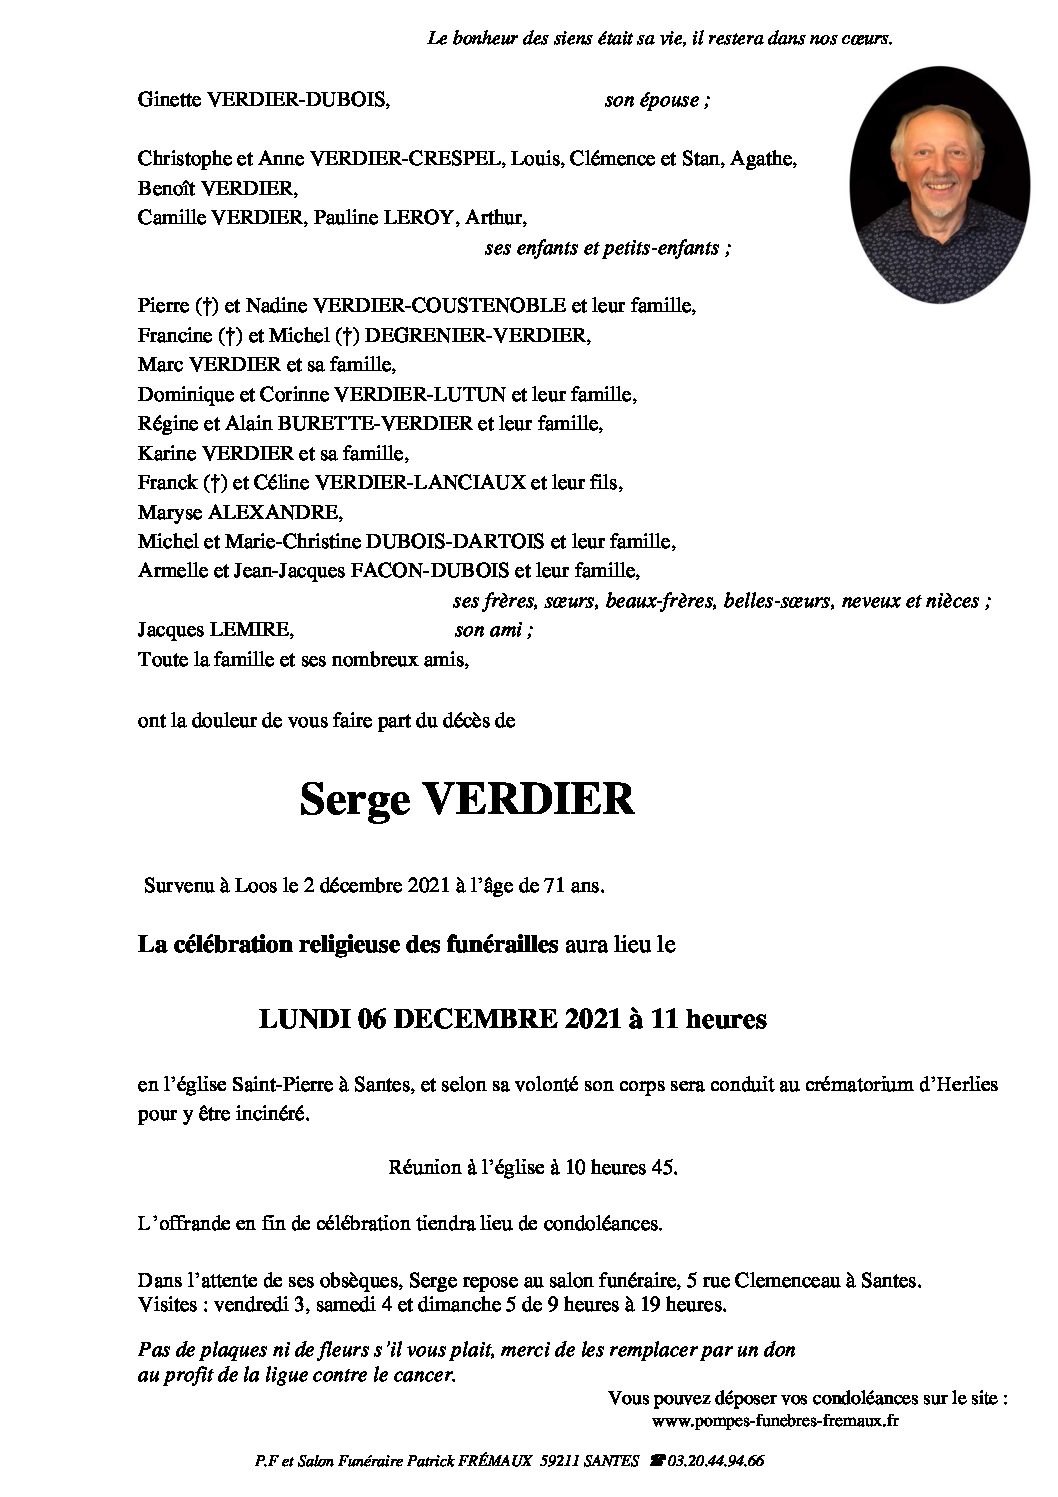 Monsieur Serge VERDIER